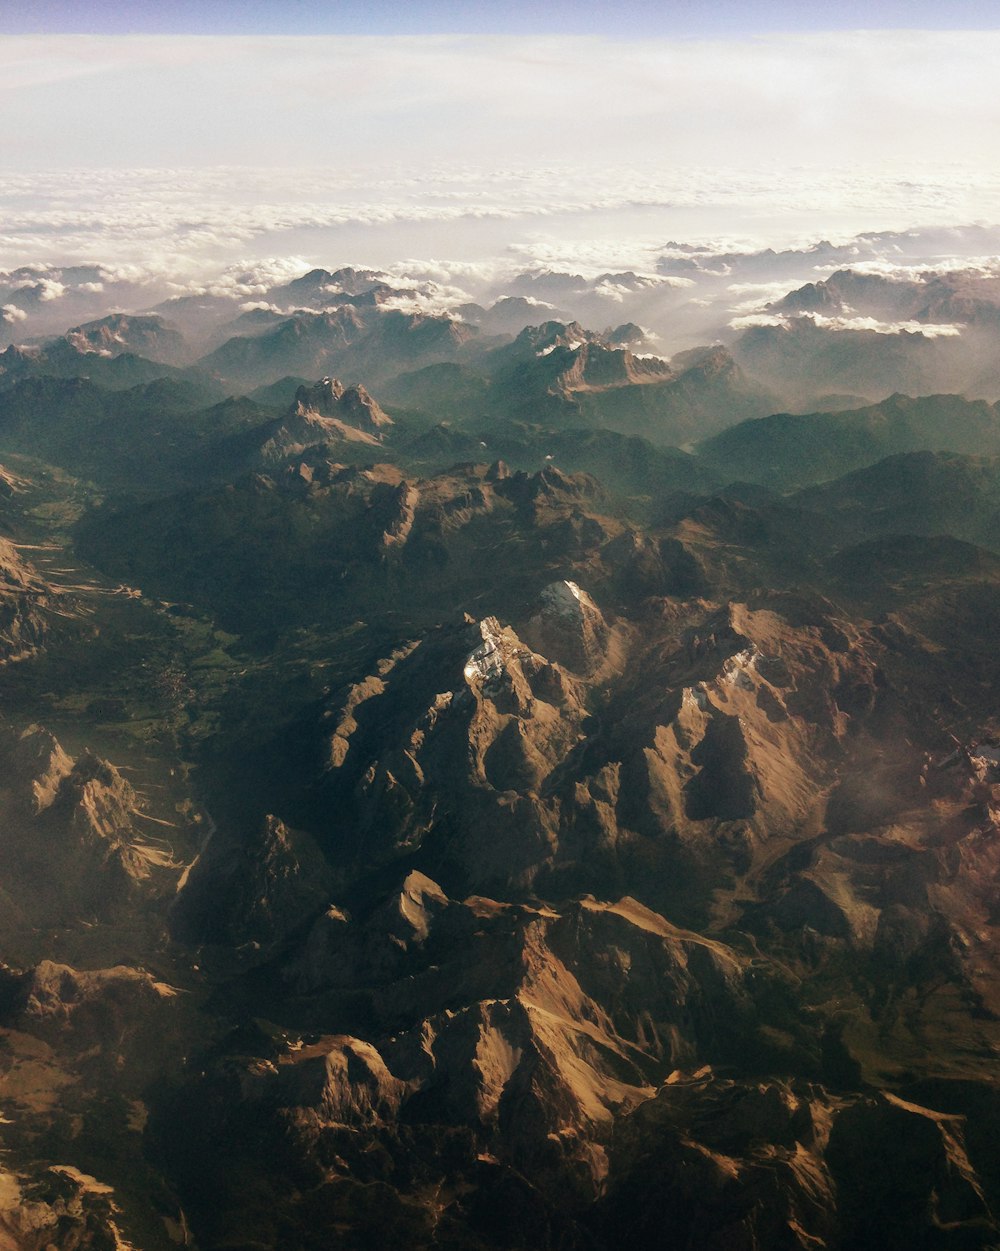 Photographie aérienne des montagnes brunes